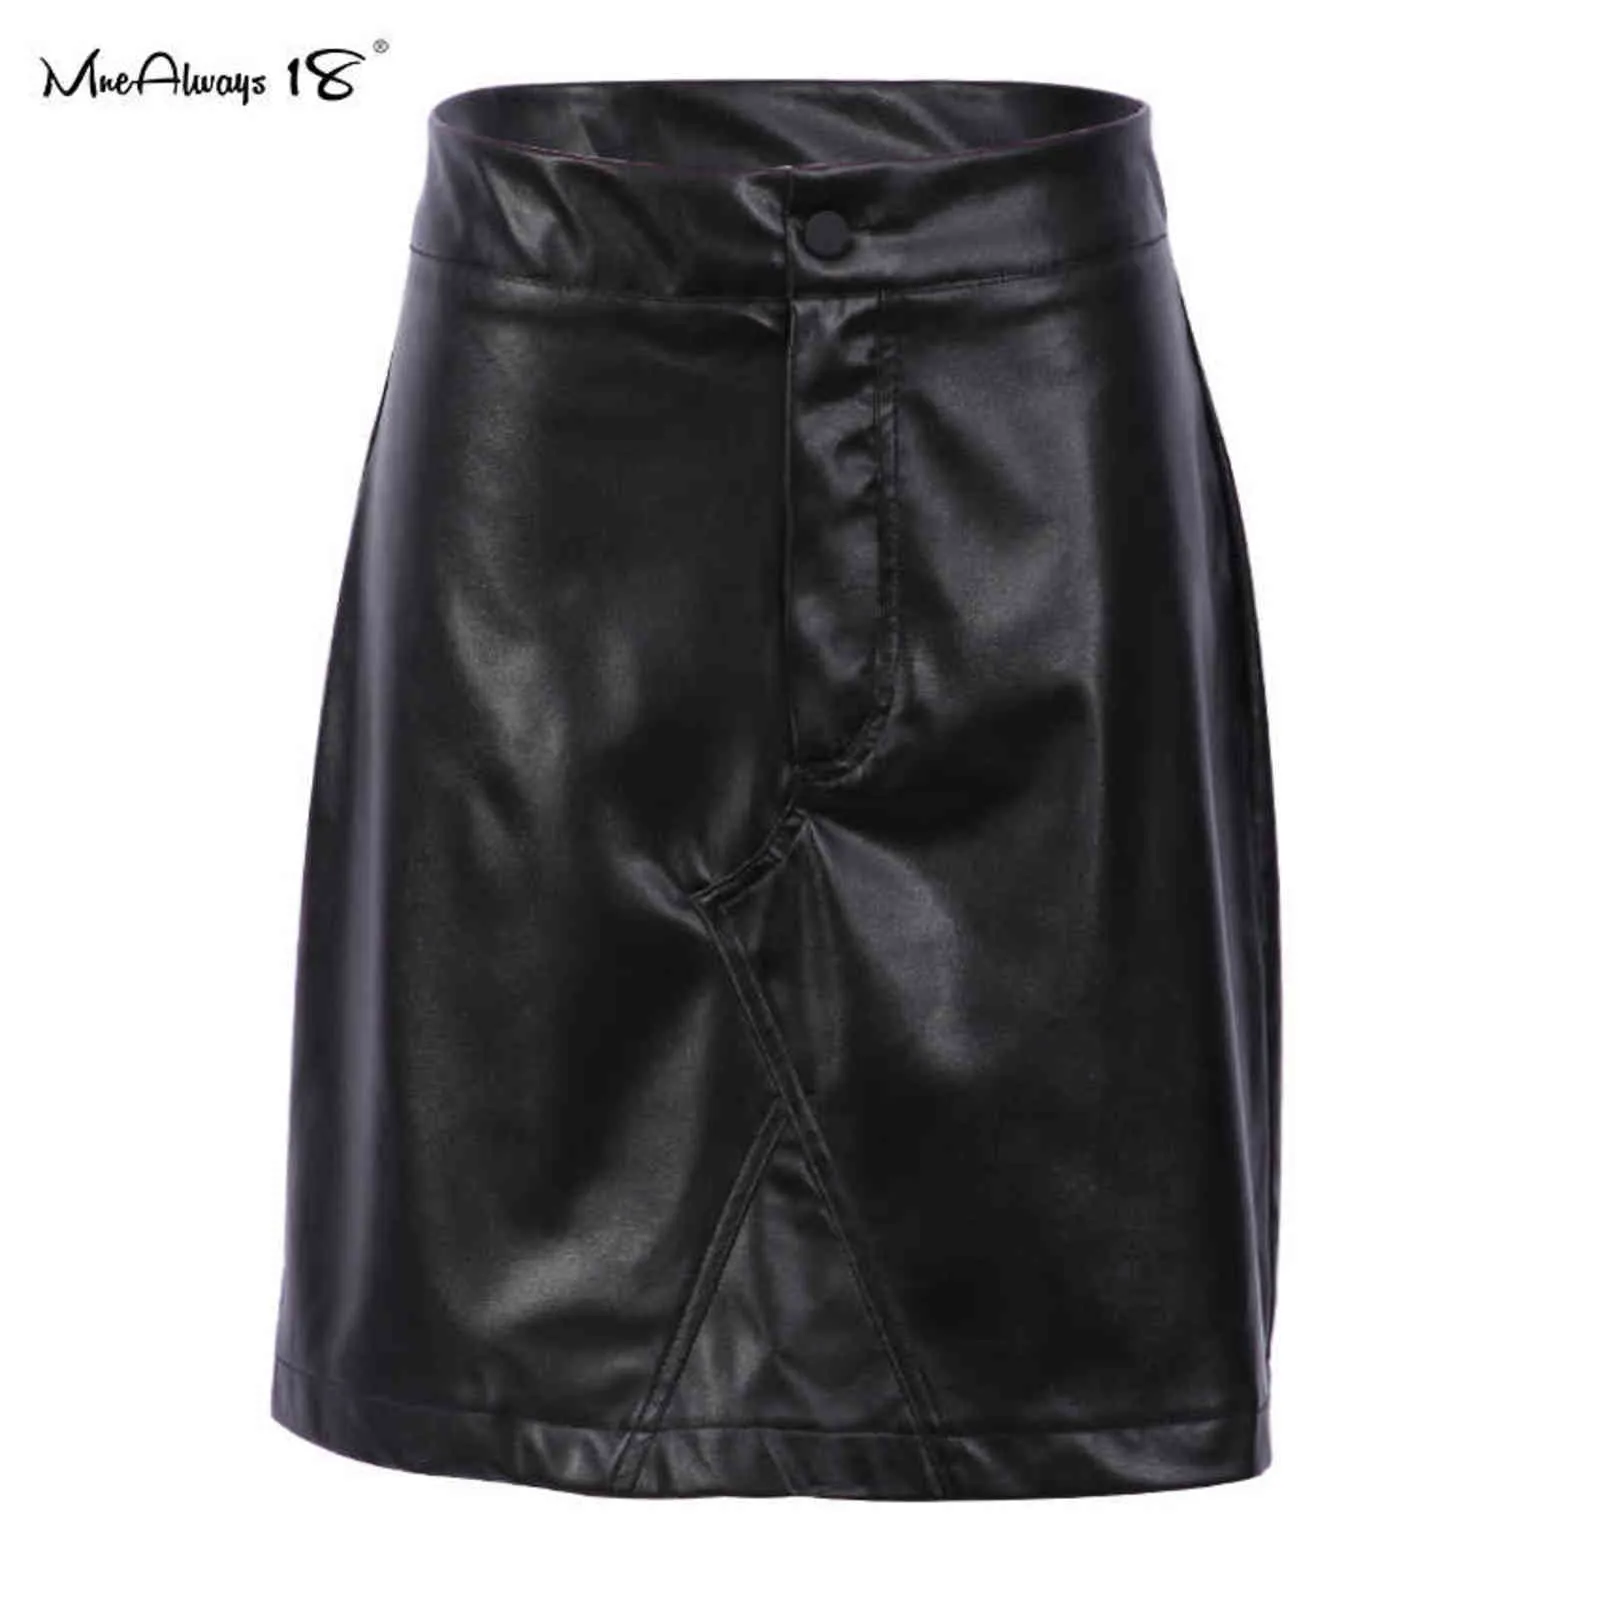 Mnealways18 Faldas de cuero vintage para mujer Bodycon Cintura alta A-Line Falda Botón Moda Trabajo Invierno Señoras Faldas cortas Cremallera 211120